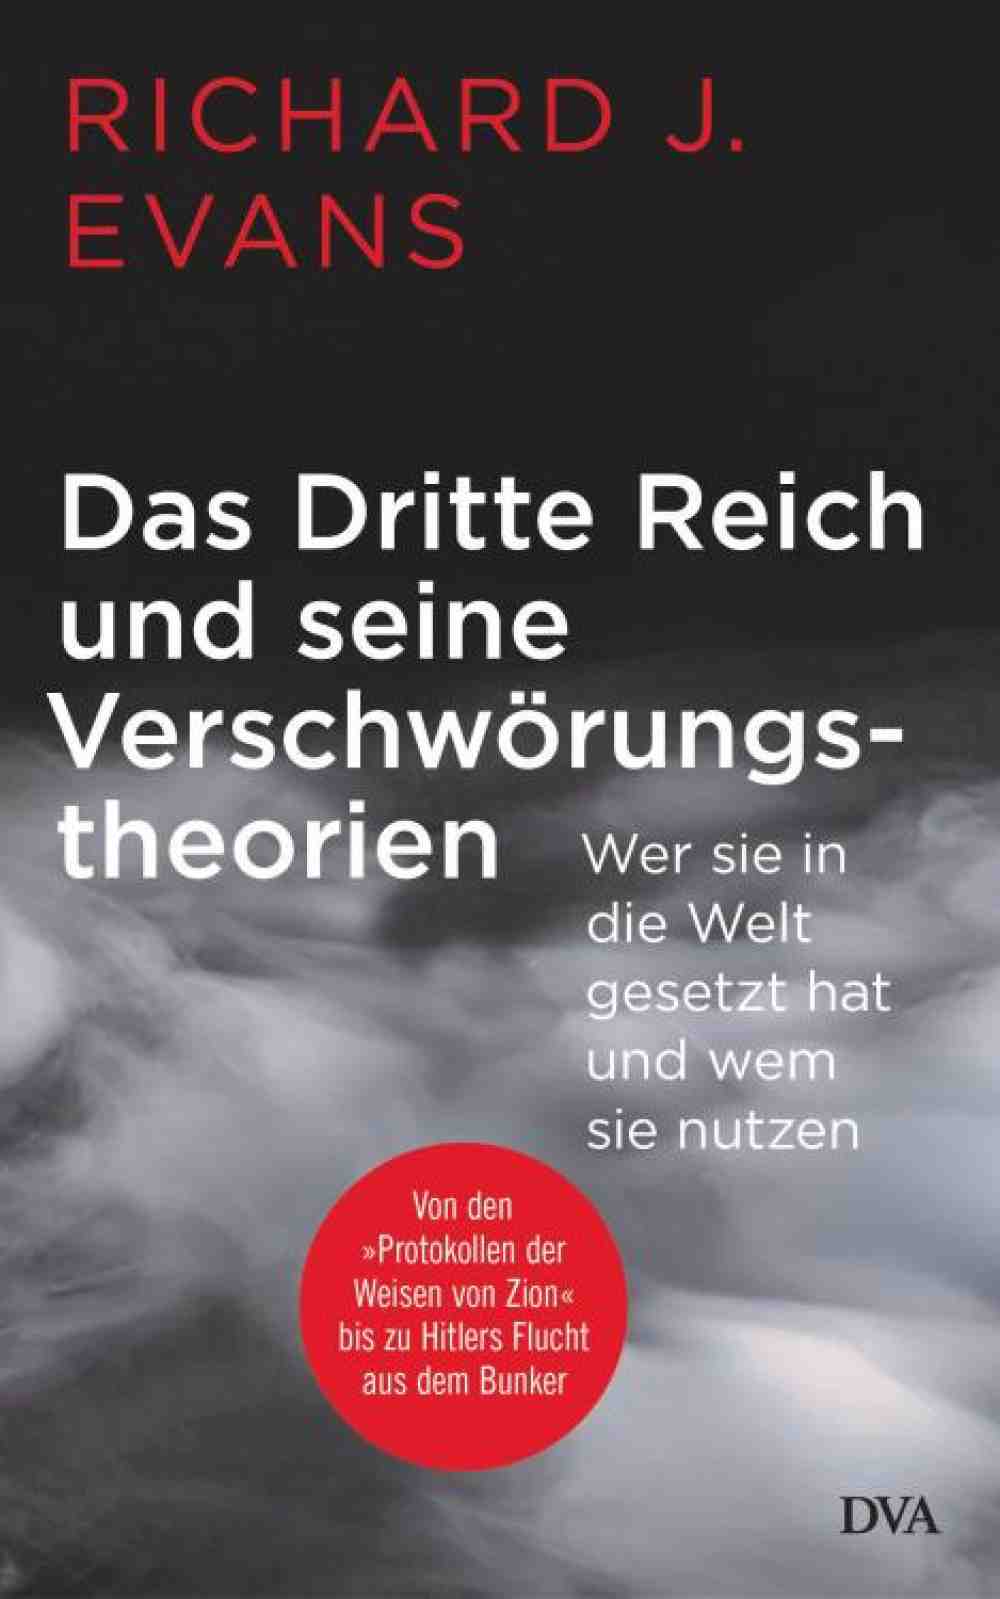 Anzeige: Lesetipps für Gütersloh: Richard J. Evans, »Das Dritte Reich und seine Verschwörungstheorien«, Buch online bestellen, online kaufen